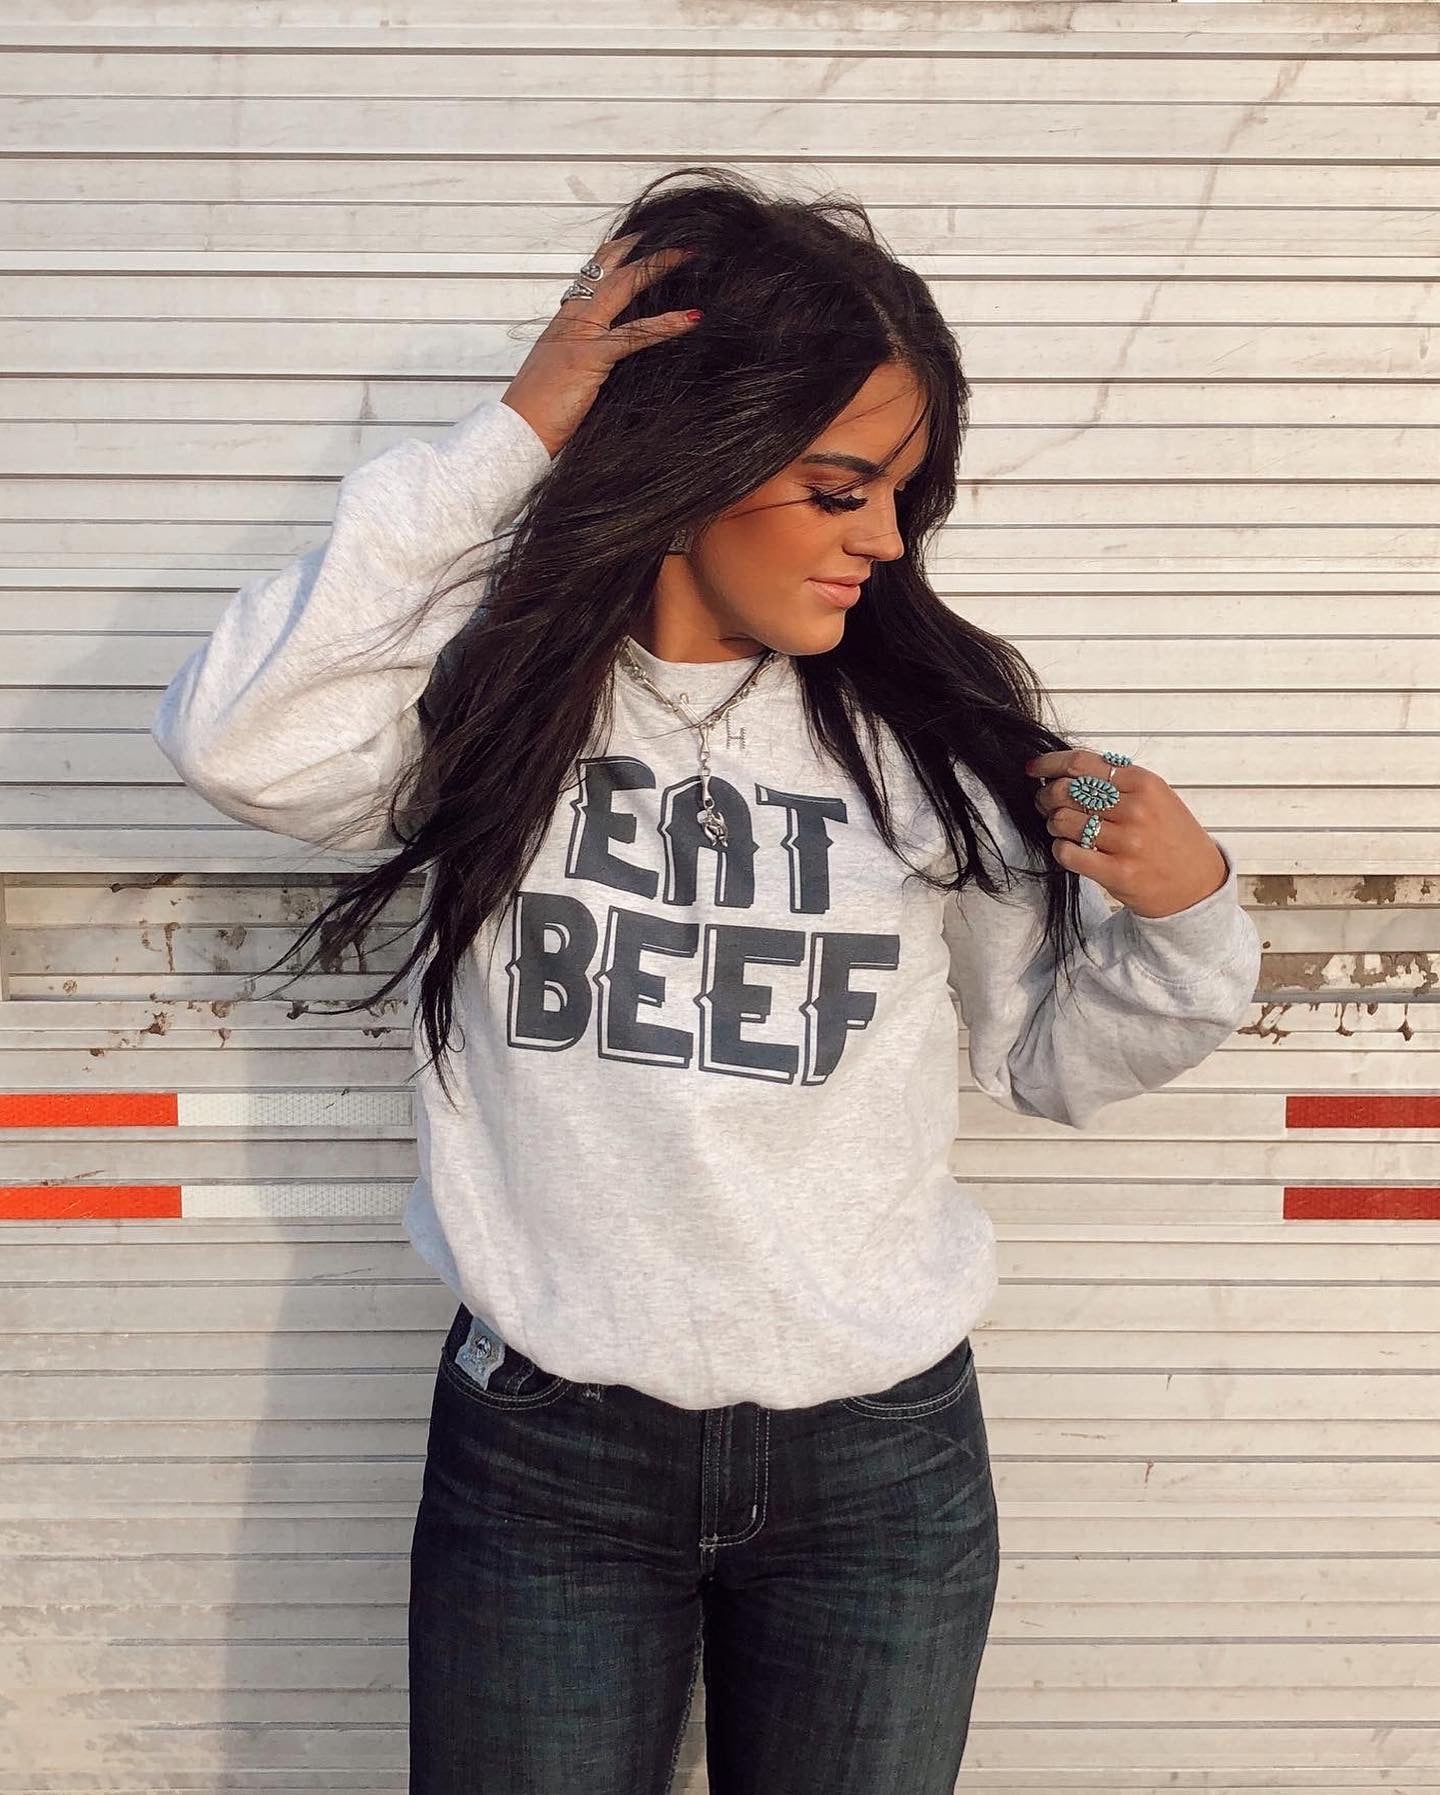 Eat Beef Sweatshirt